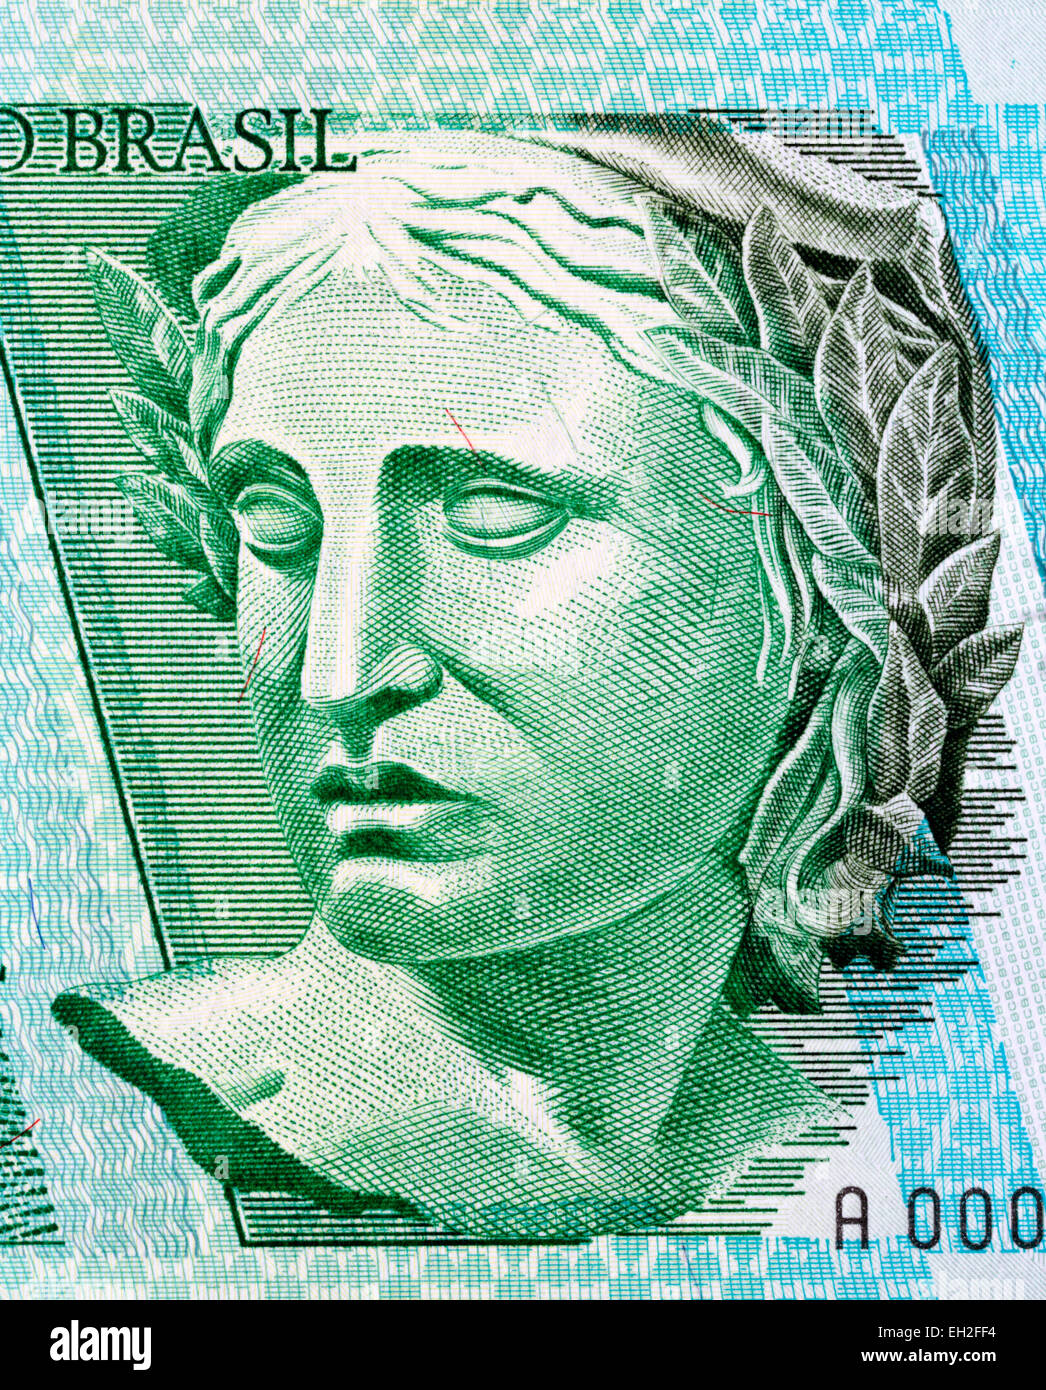 La escultura de la República, 1 billetes reales, Brasil, 1997 Foto de stock